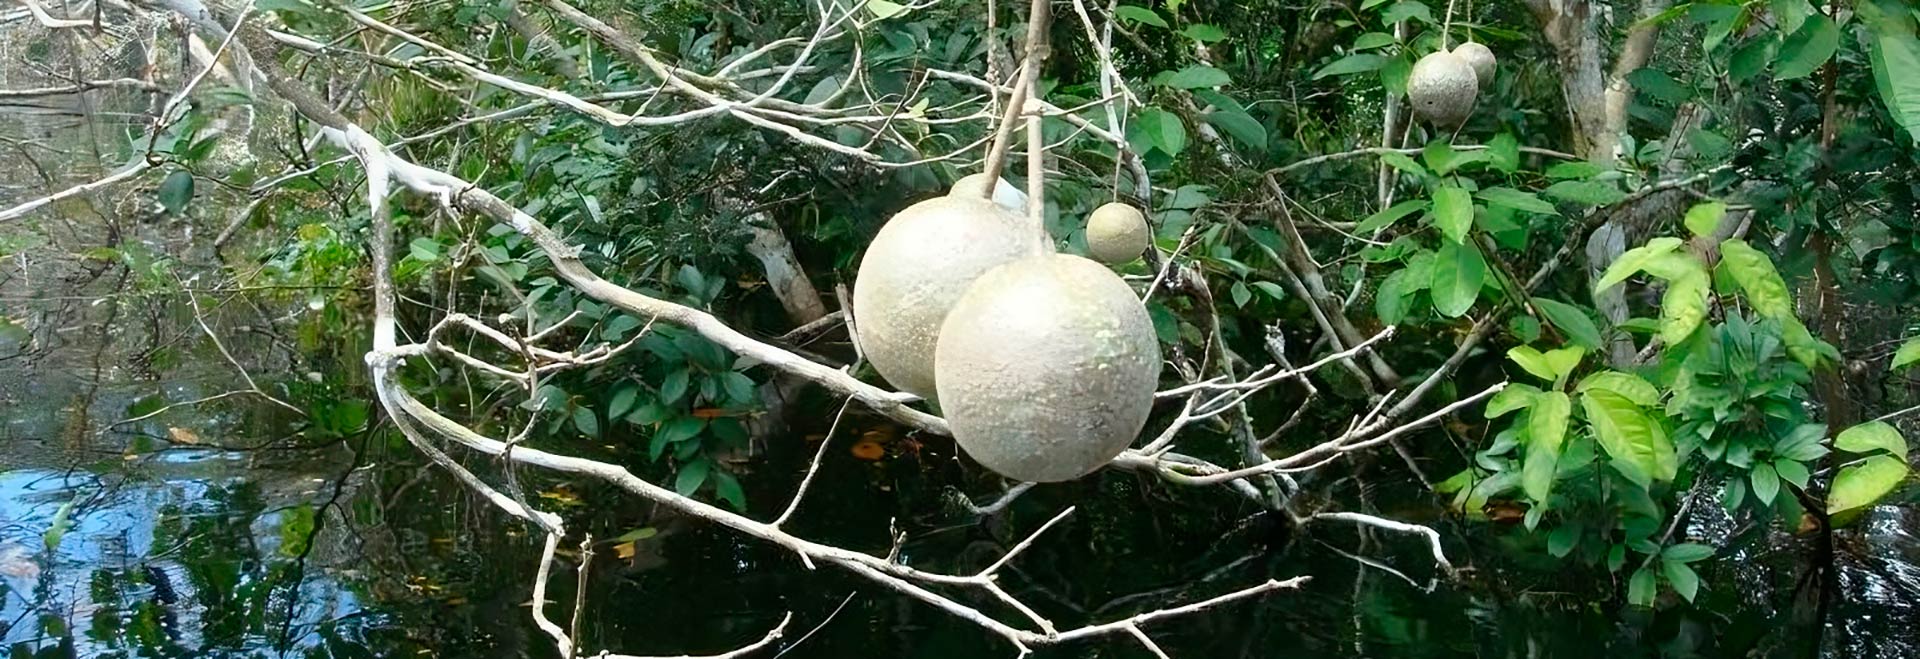 A copa de uma árvore de catoré (Leonia glycycarpa) em frutificação; durante o período de cheias dos rios, perde completamente suas folhas e produz frutos que são consumidos pelos peixes